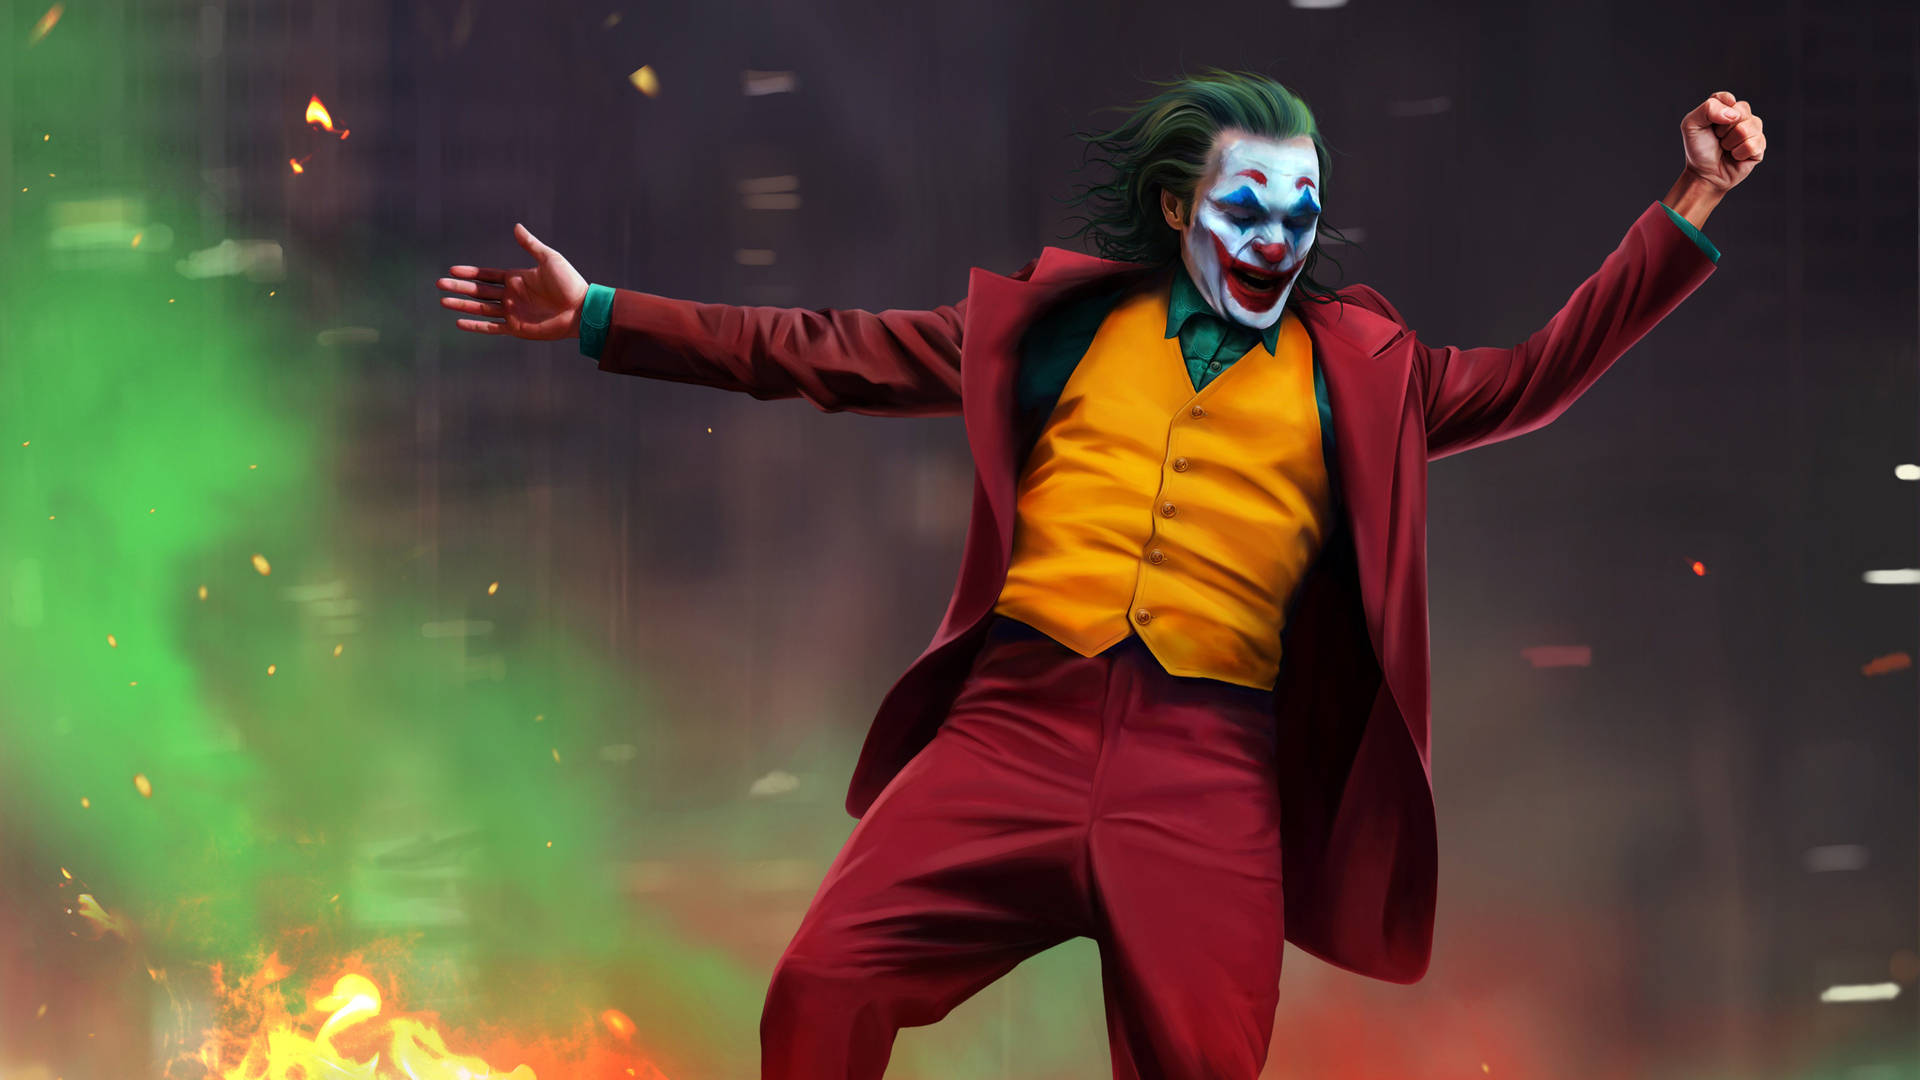 Joker 2019 Dancing Scene